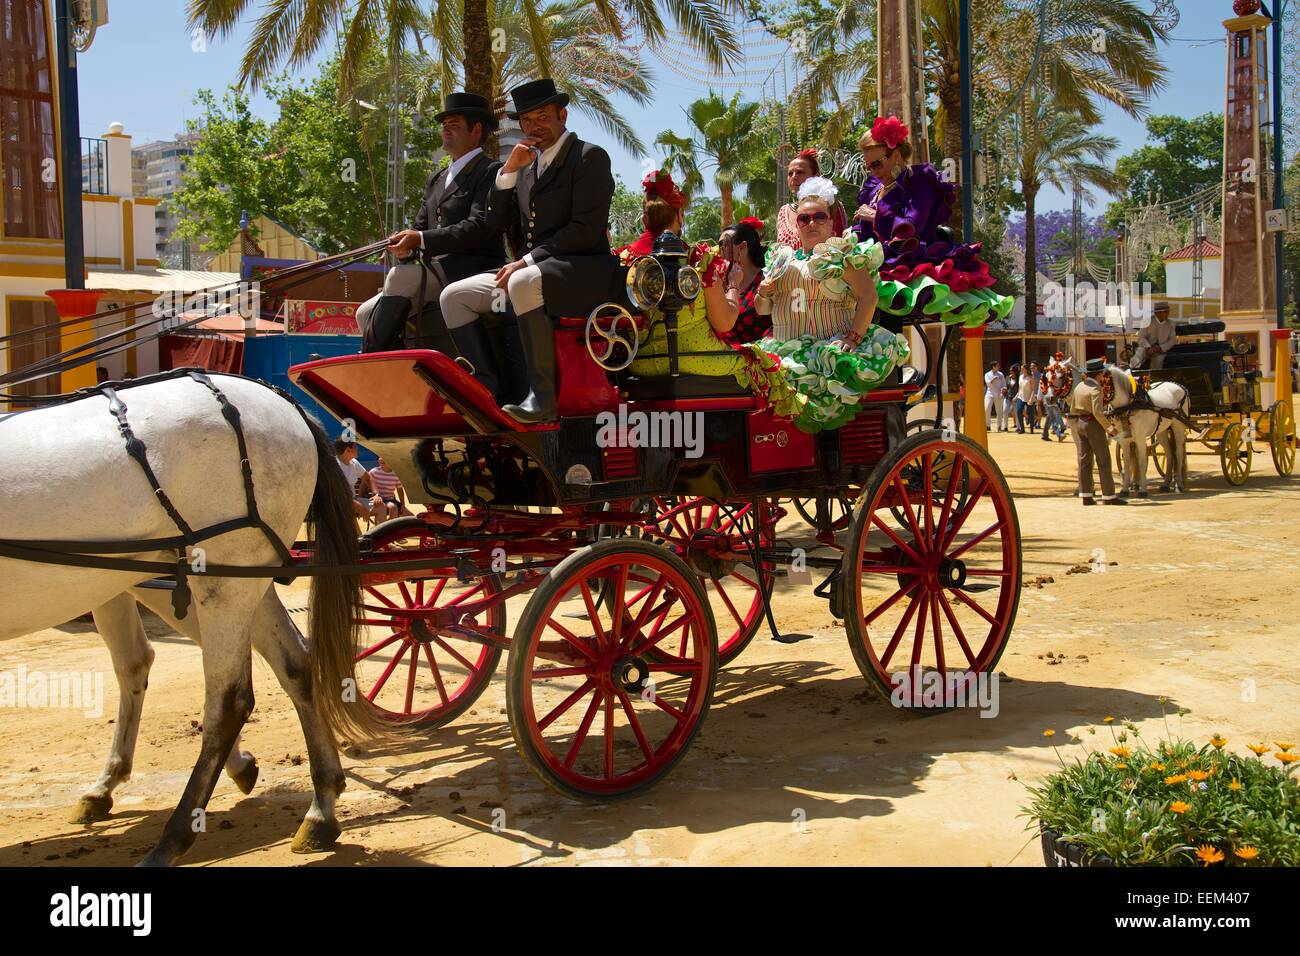 Carriages at the Feria del Caballo, Jerez de la Frontera, Andalusia, Spain Stock Photo